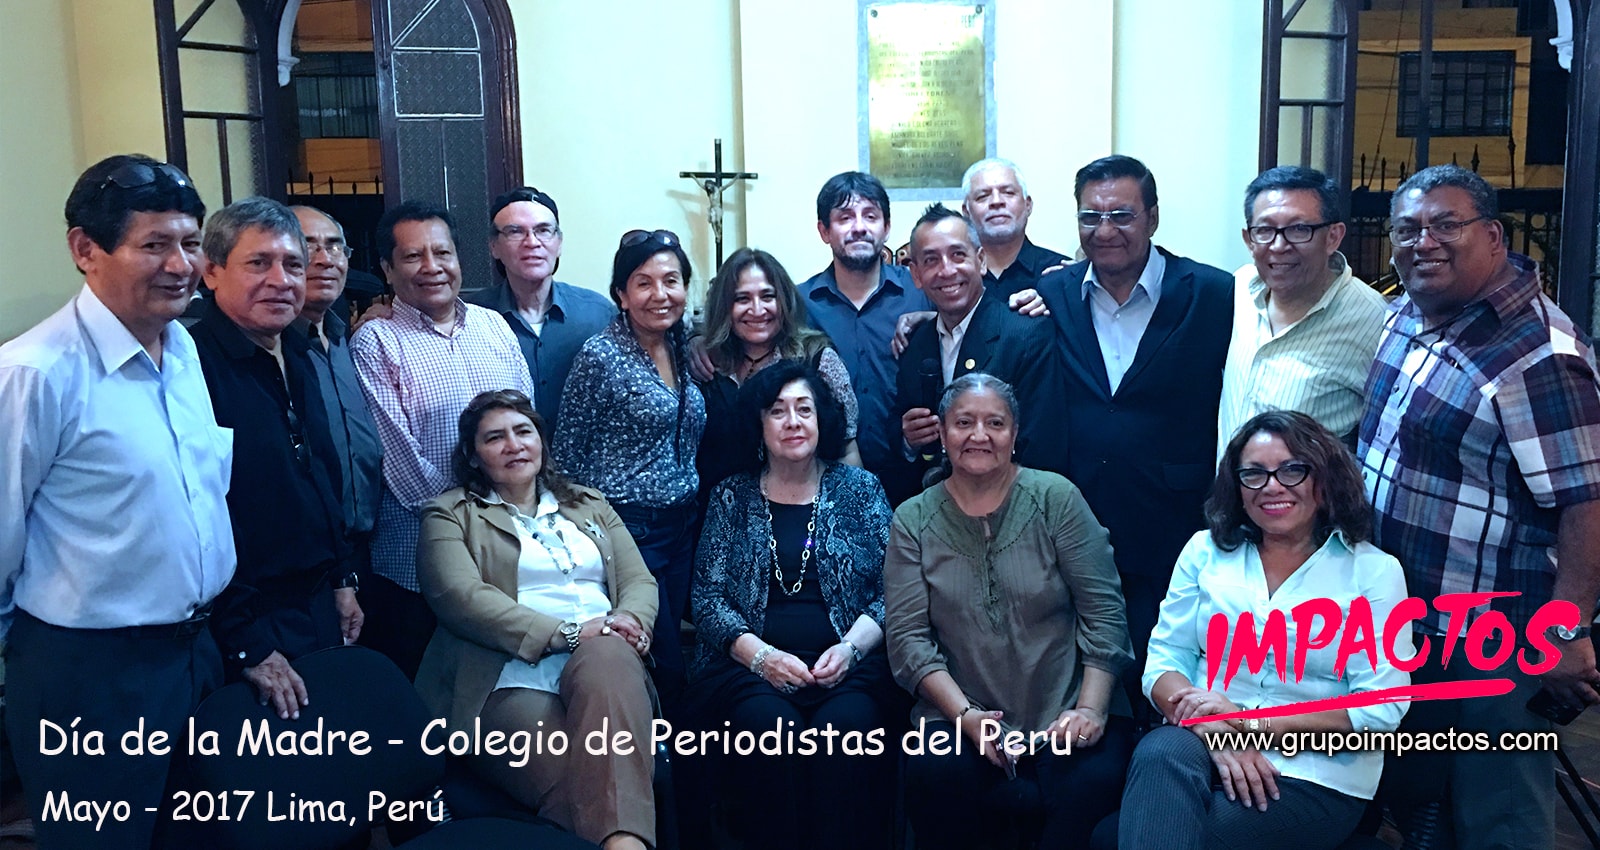 Jaime Pereda & Grupo IMPACTOS en Colegio de Periodistas del Perú